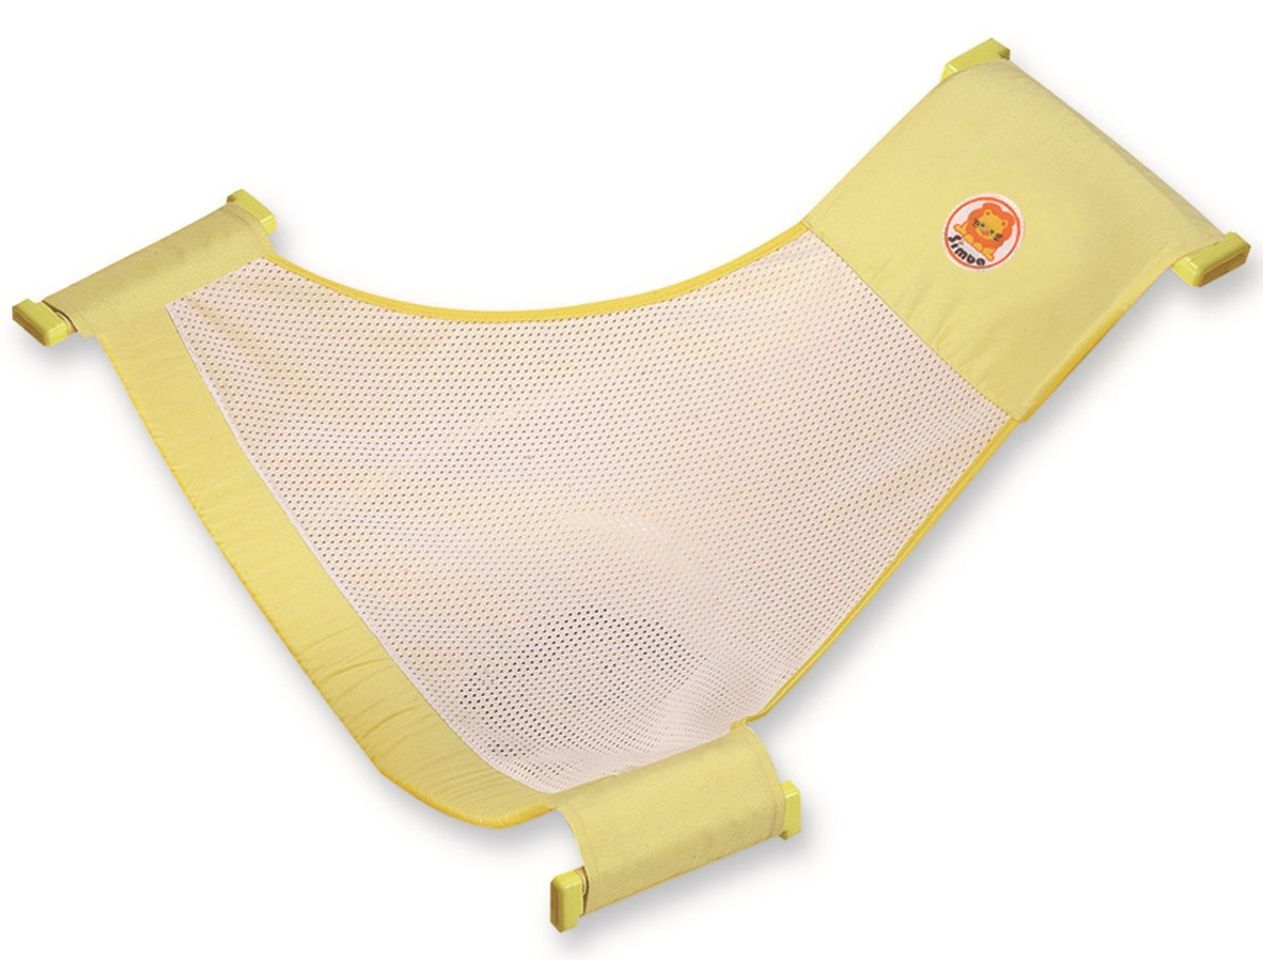 Lưới tắm cho bé Simba S9807 là sản phẩm rất tiện lợi, được thiết kế chống trơn trượt an toàn tuyệt đối cho bé khi tắm